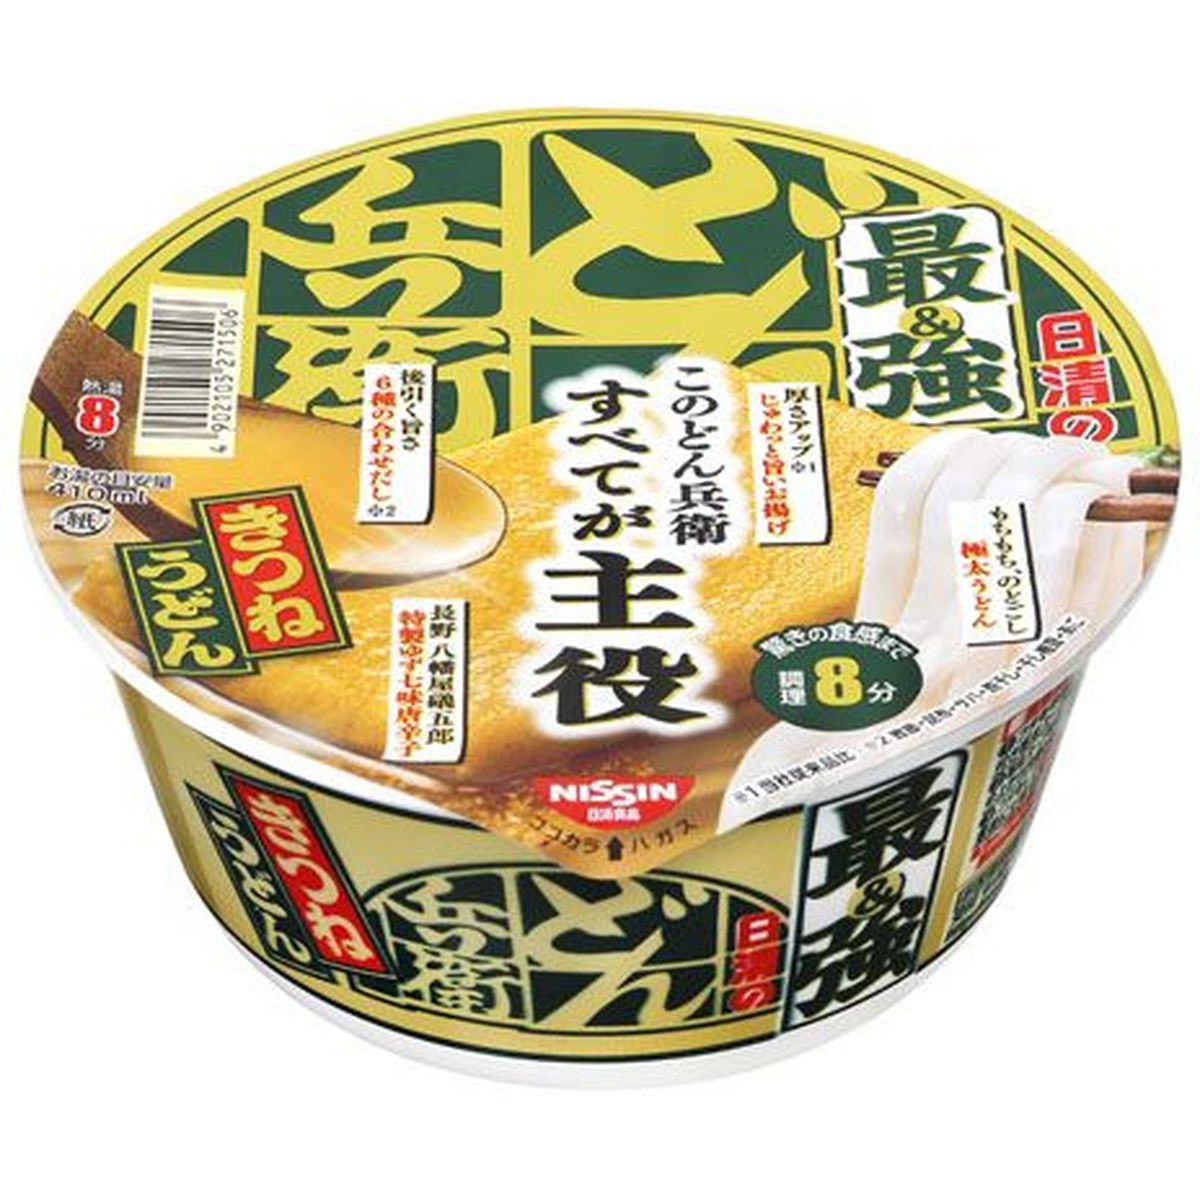 【12個入リ】日清食品 最強ドン兵衛キツネウドンカップ 93g